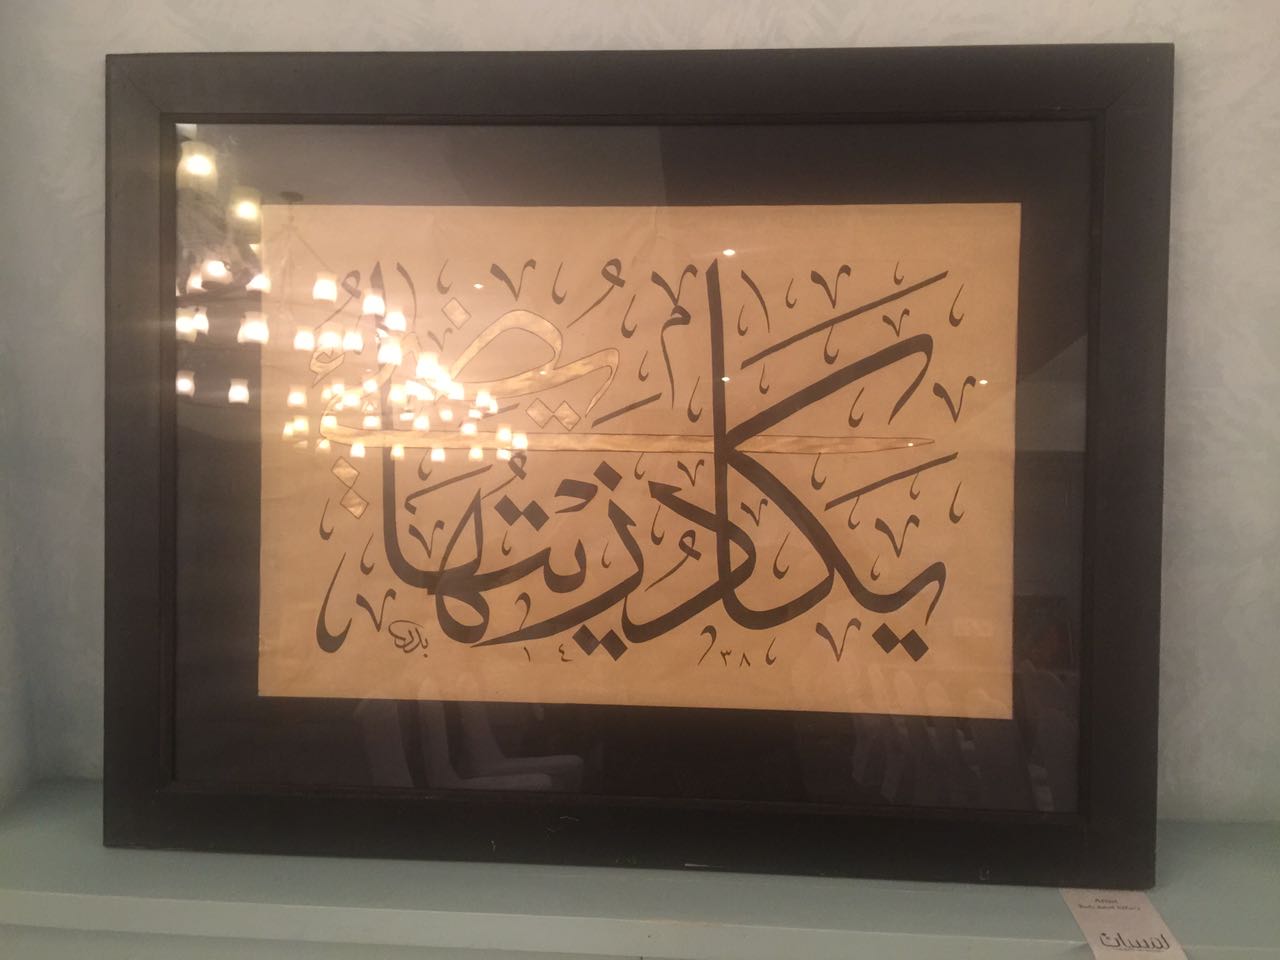 ملتقى سفراء الفن التشكيلي والخط العربي الدولي (13)